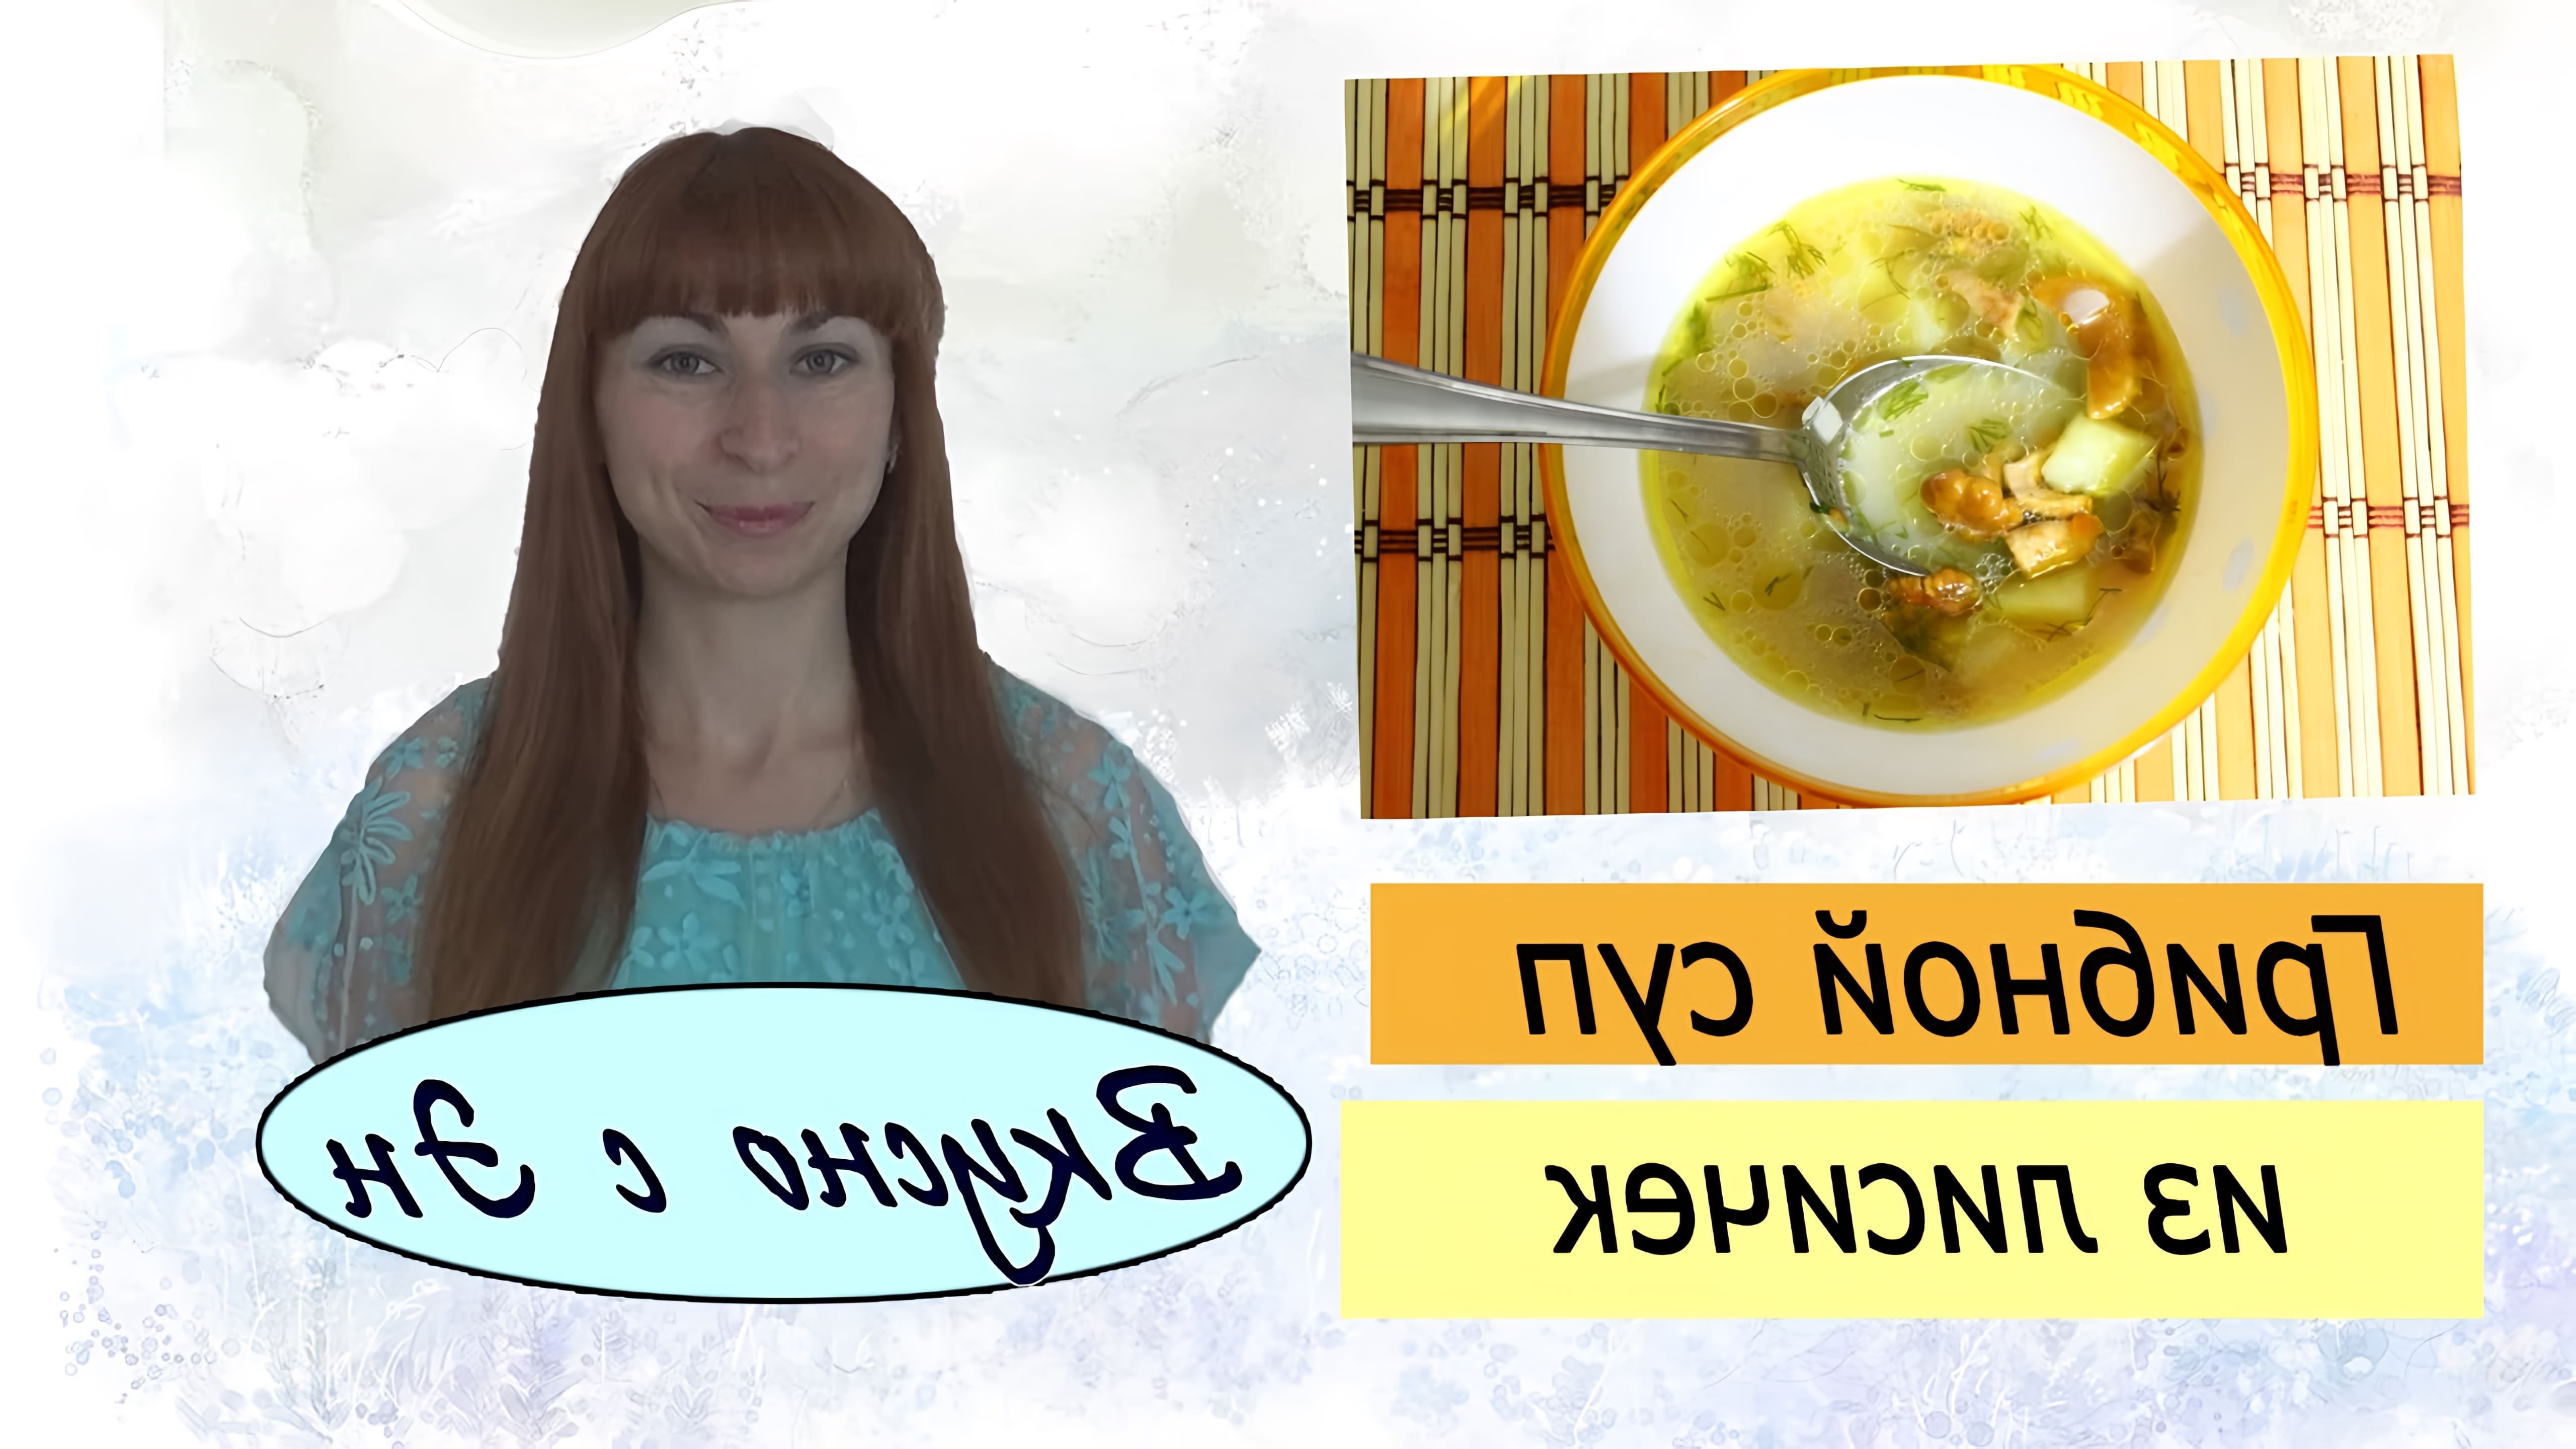 В этом видео Эн делится своим рецептом грибного супа из лисичек